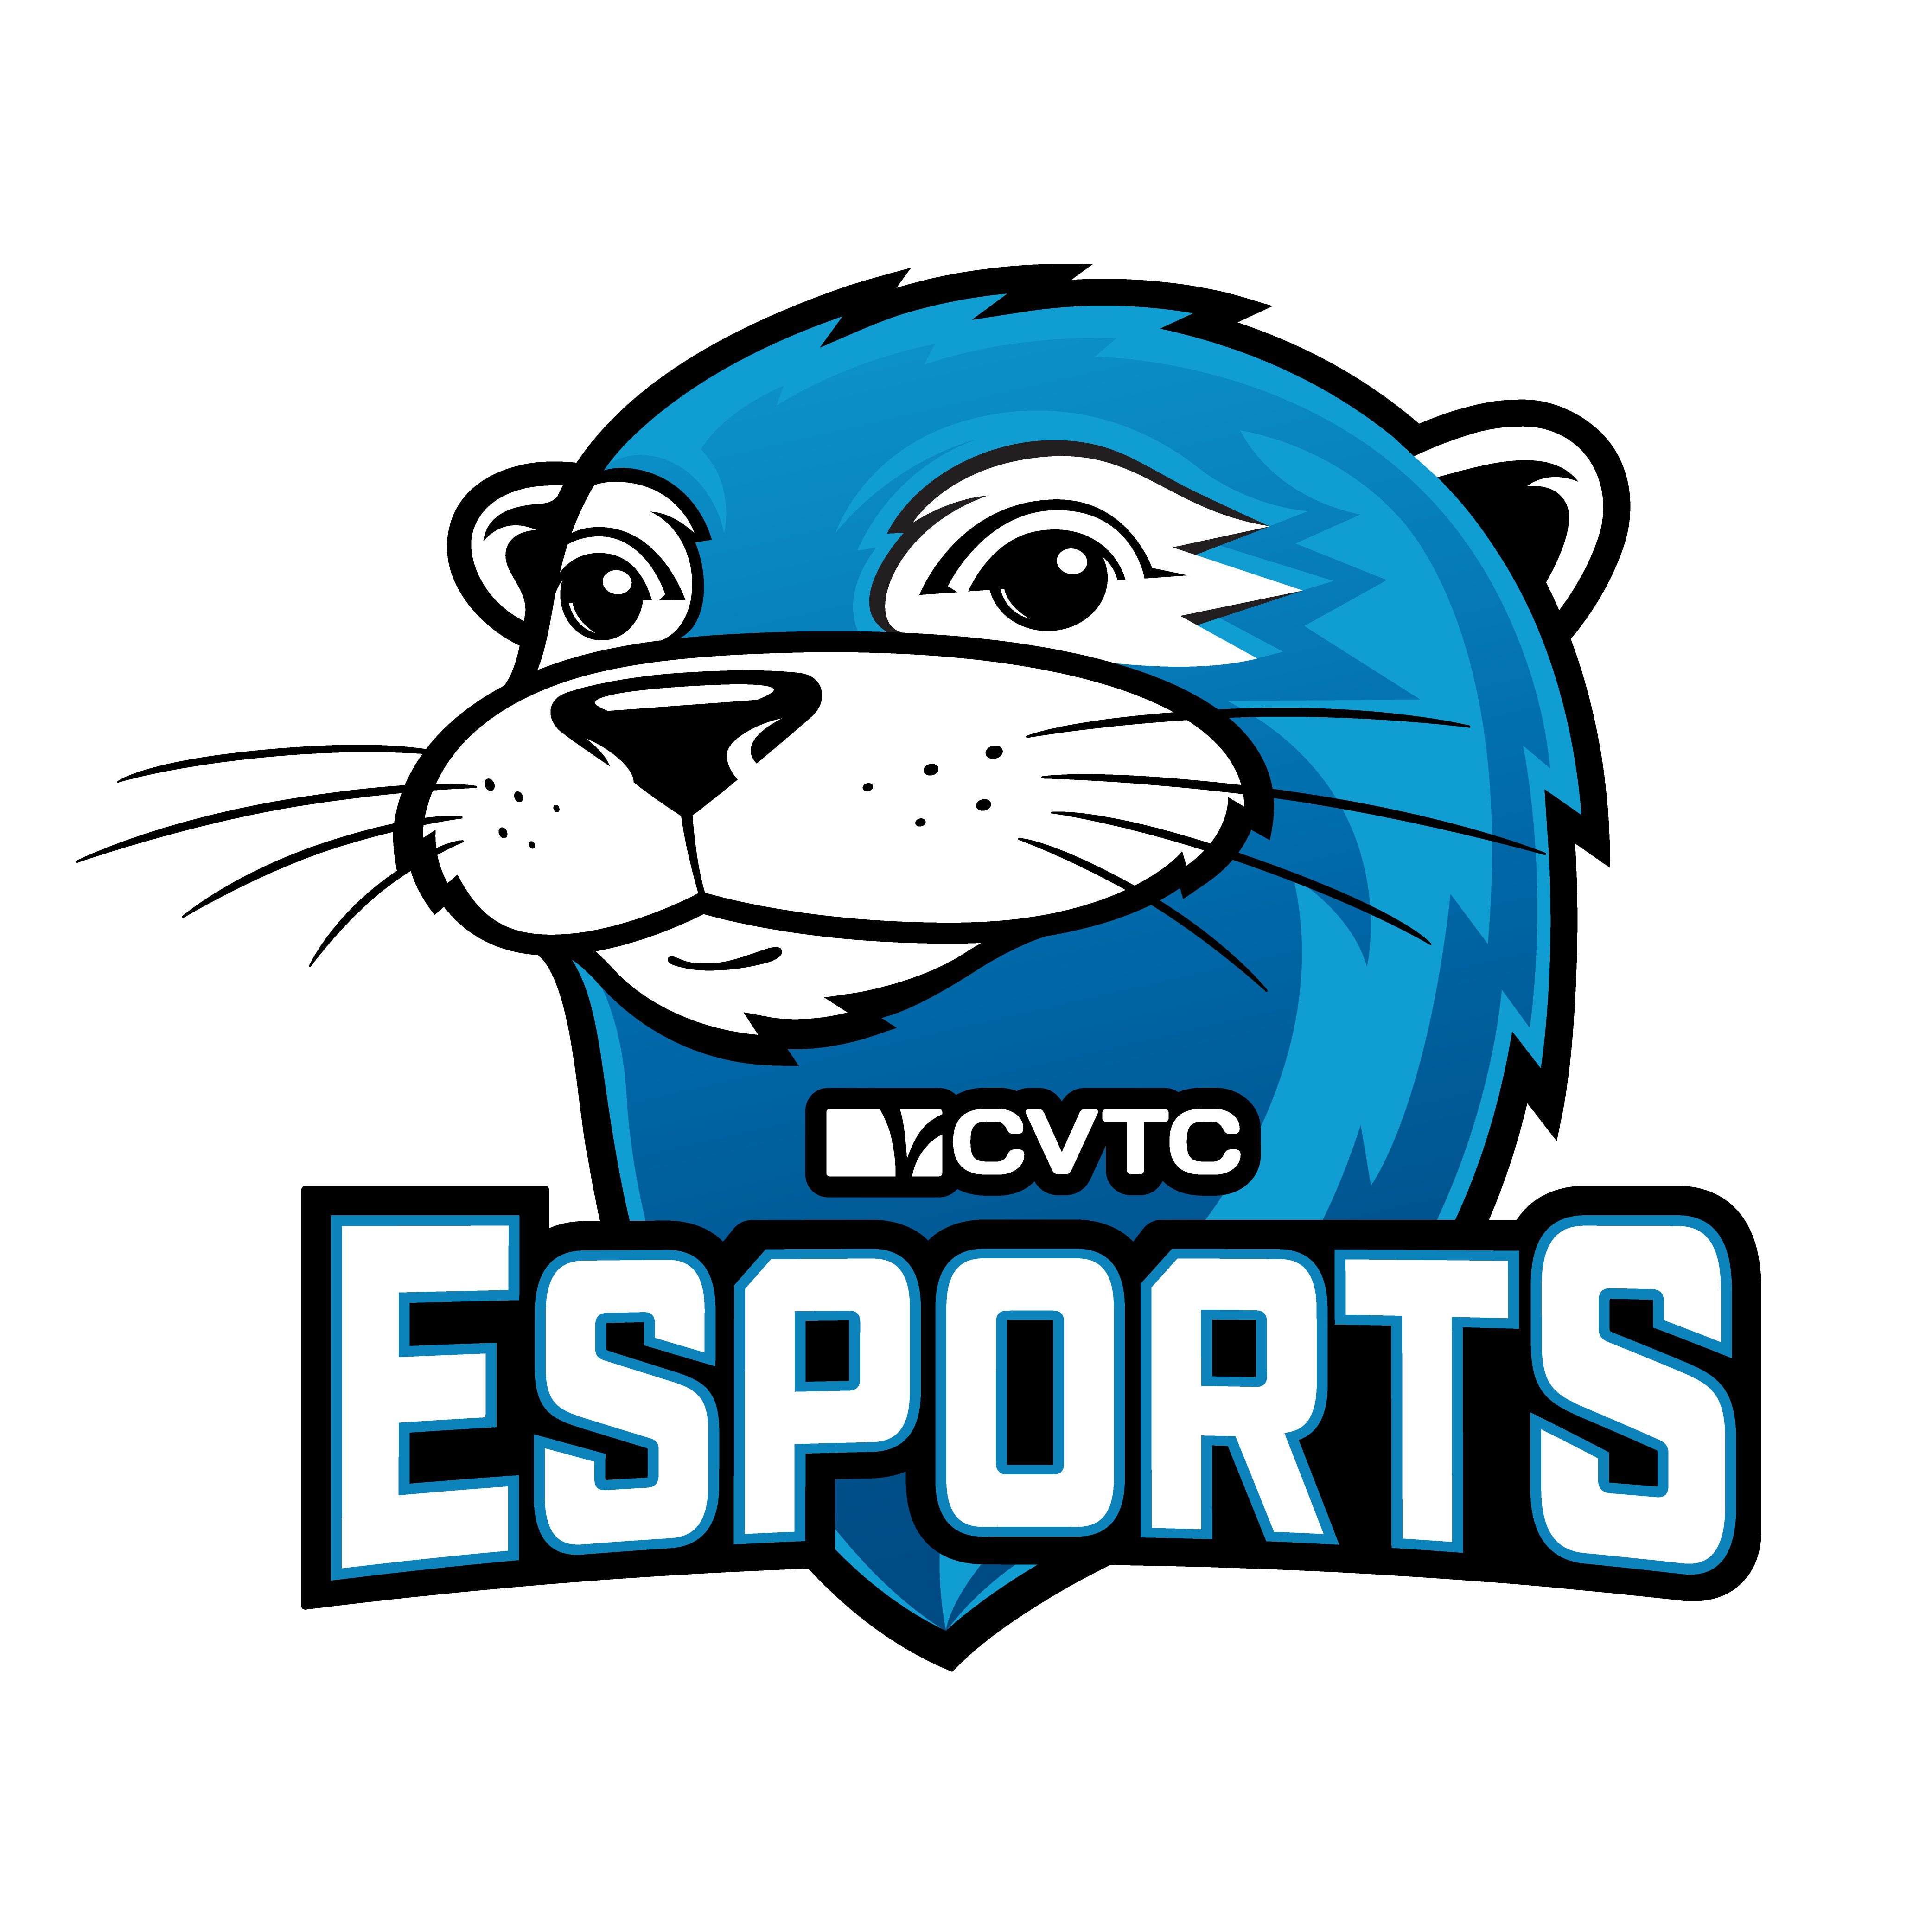 CVTC Esports Club Logo